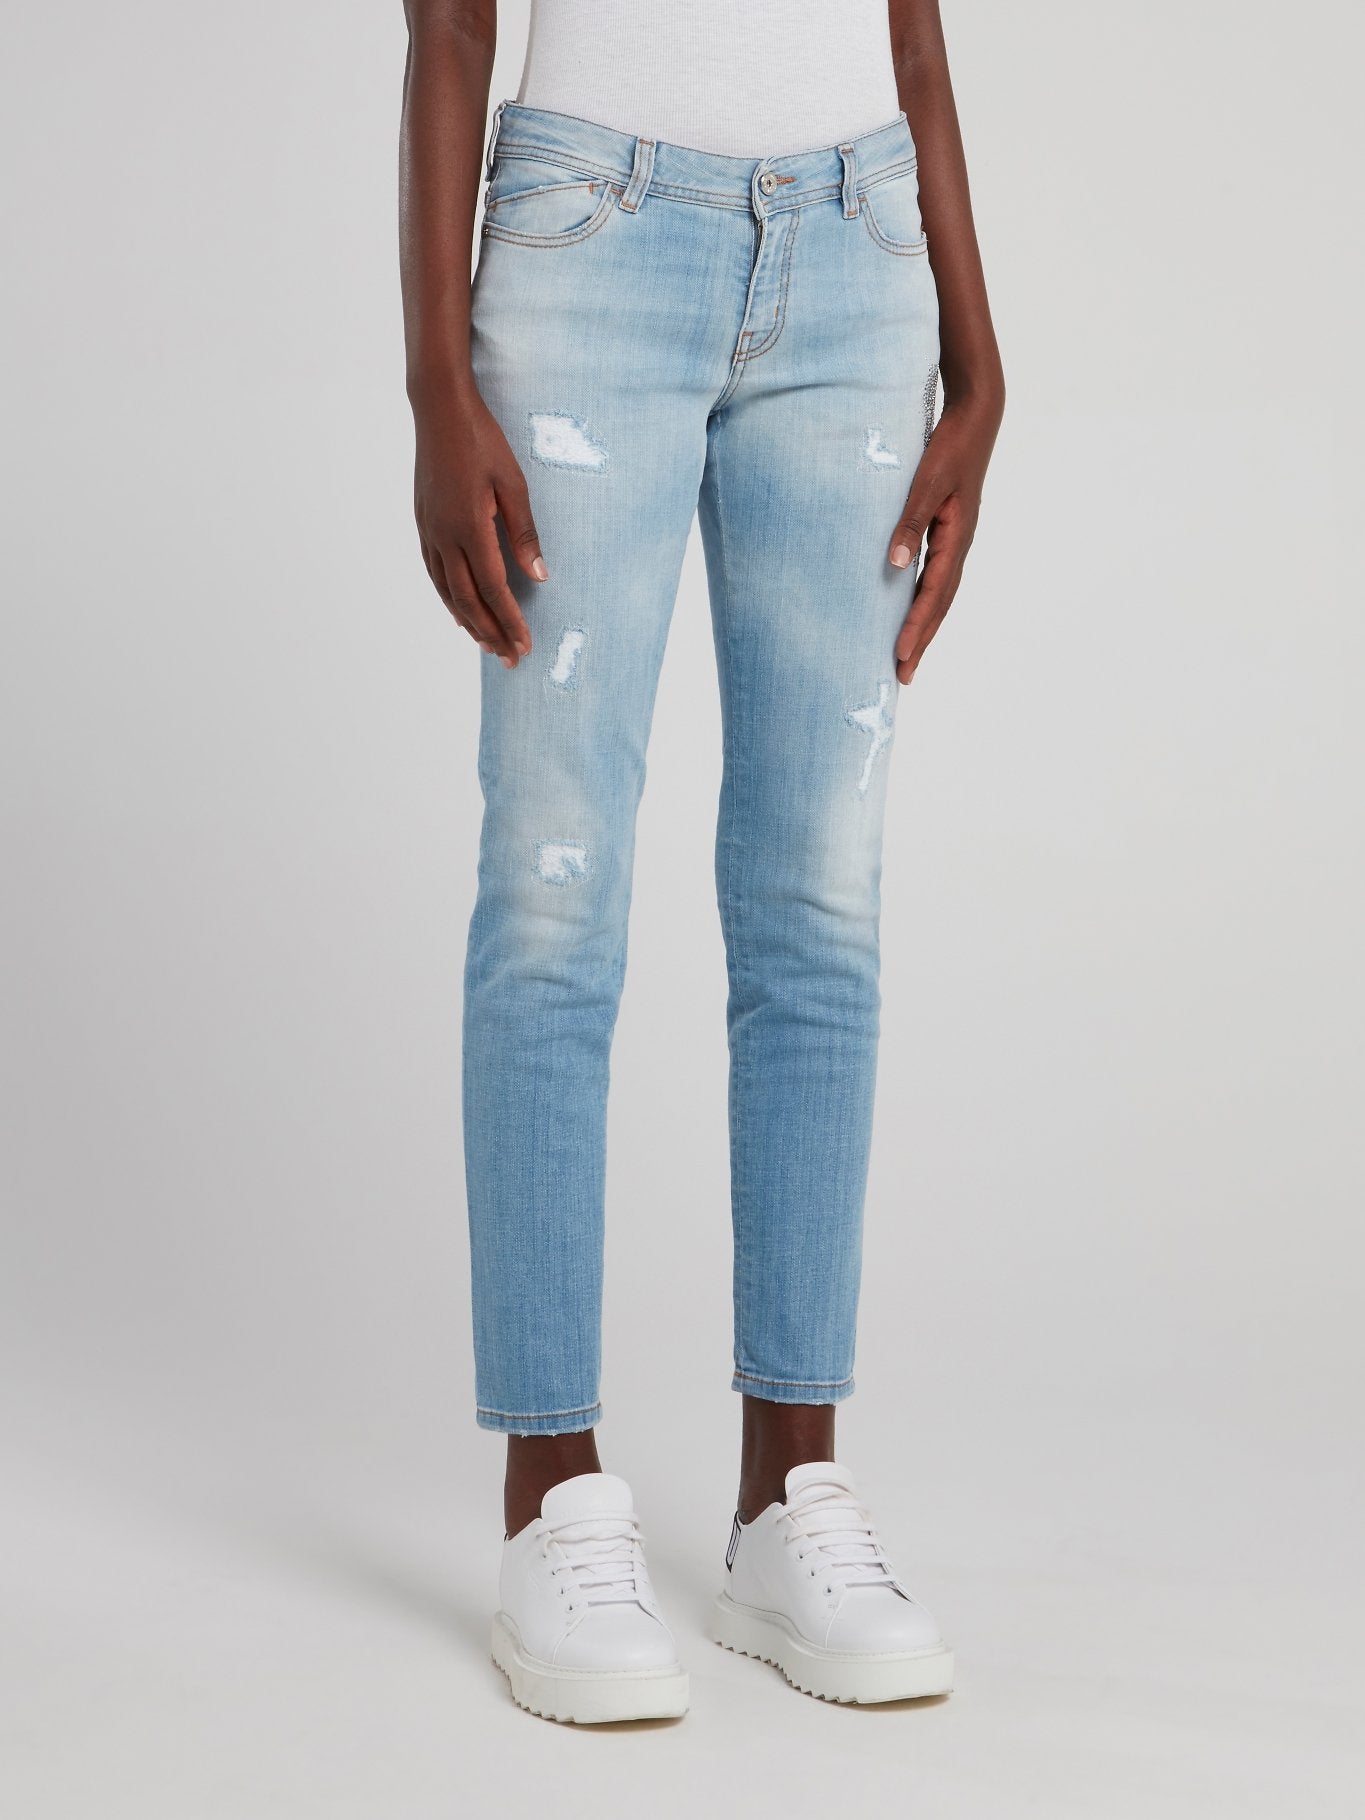 Синие джинсы с рваной отделкой и эффектом кислотной стирки